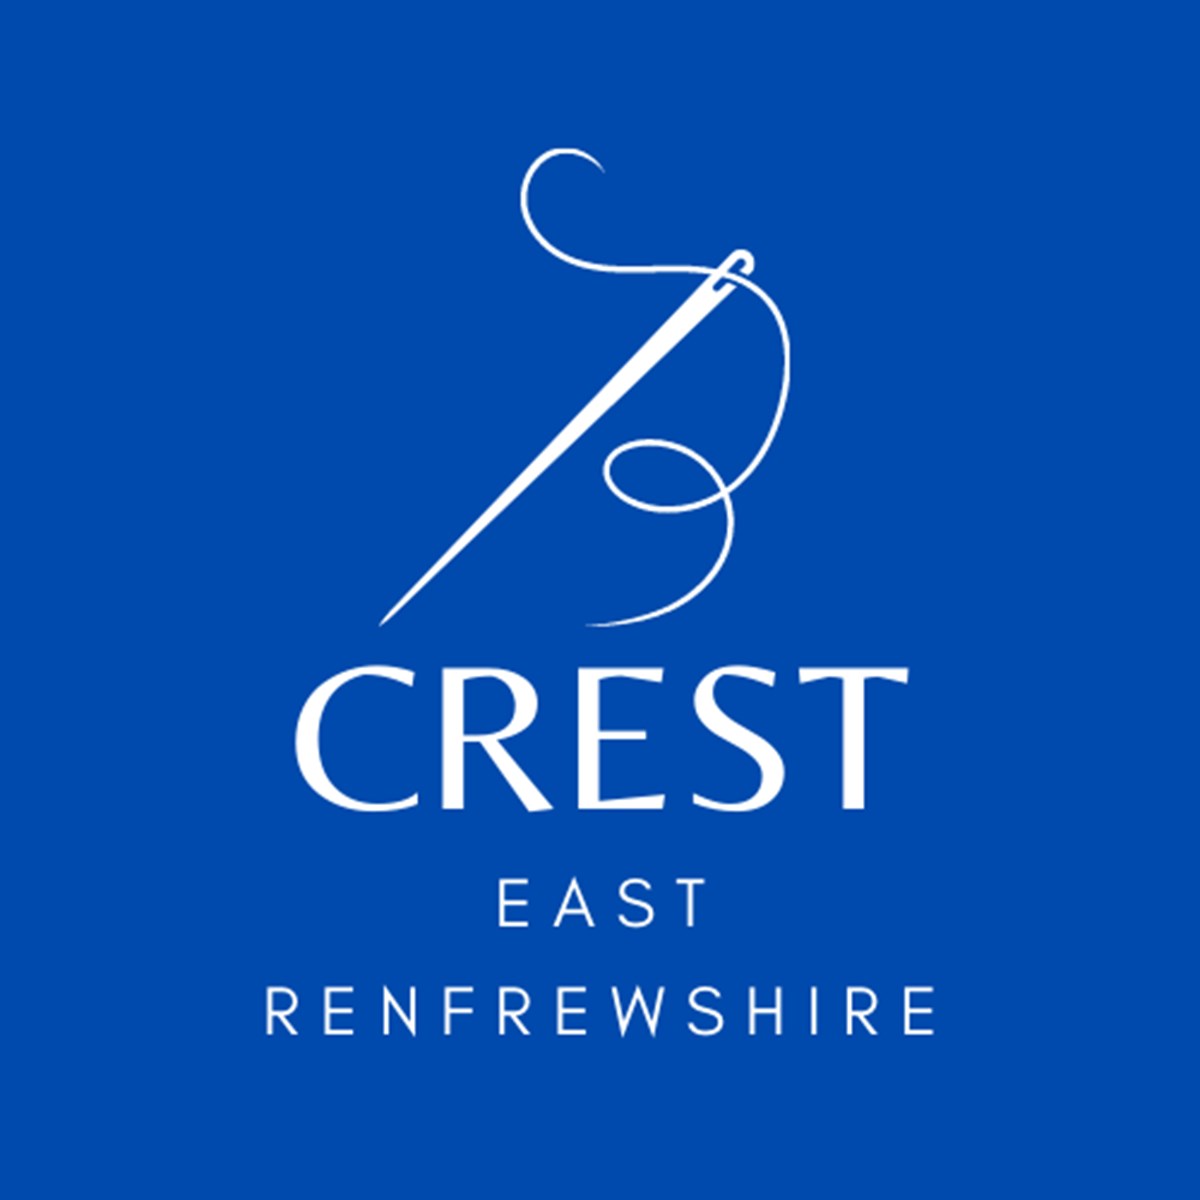 Crest East Ren